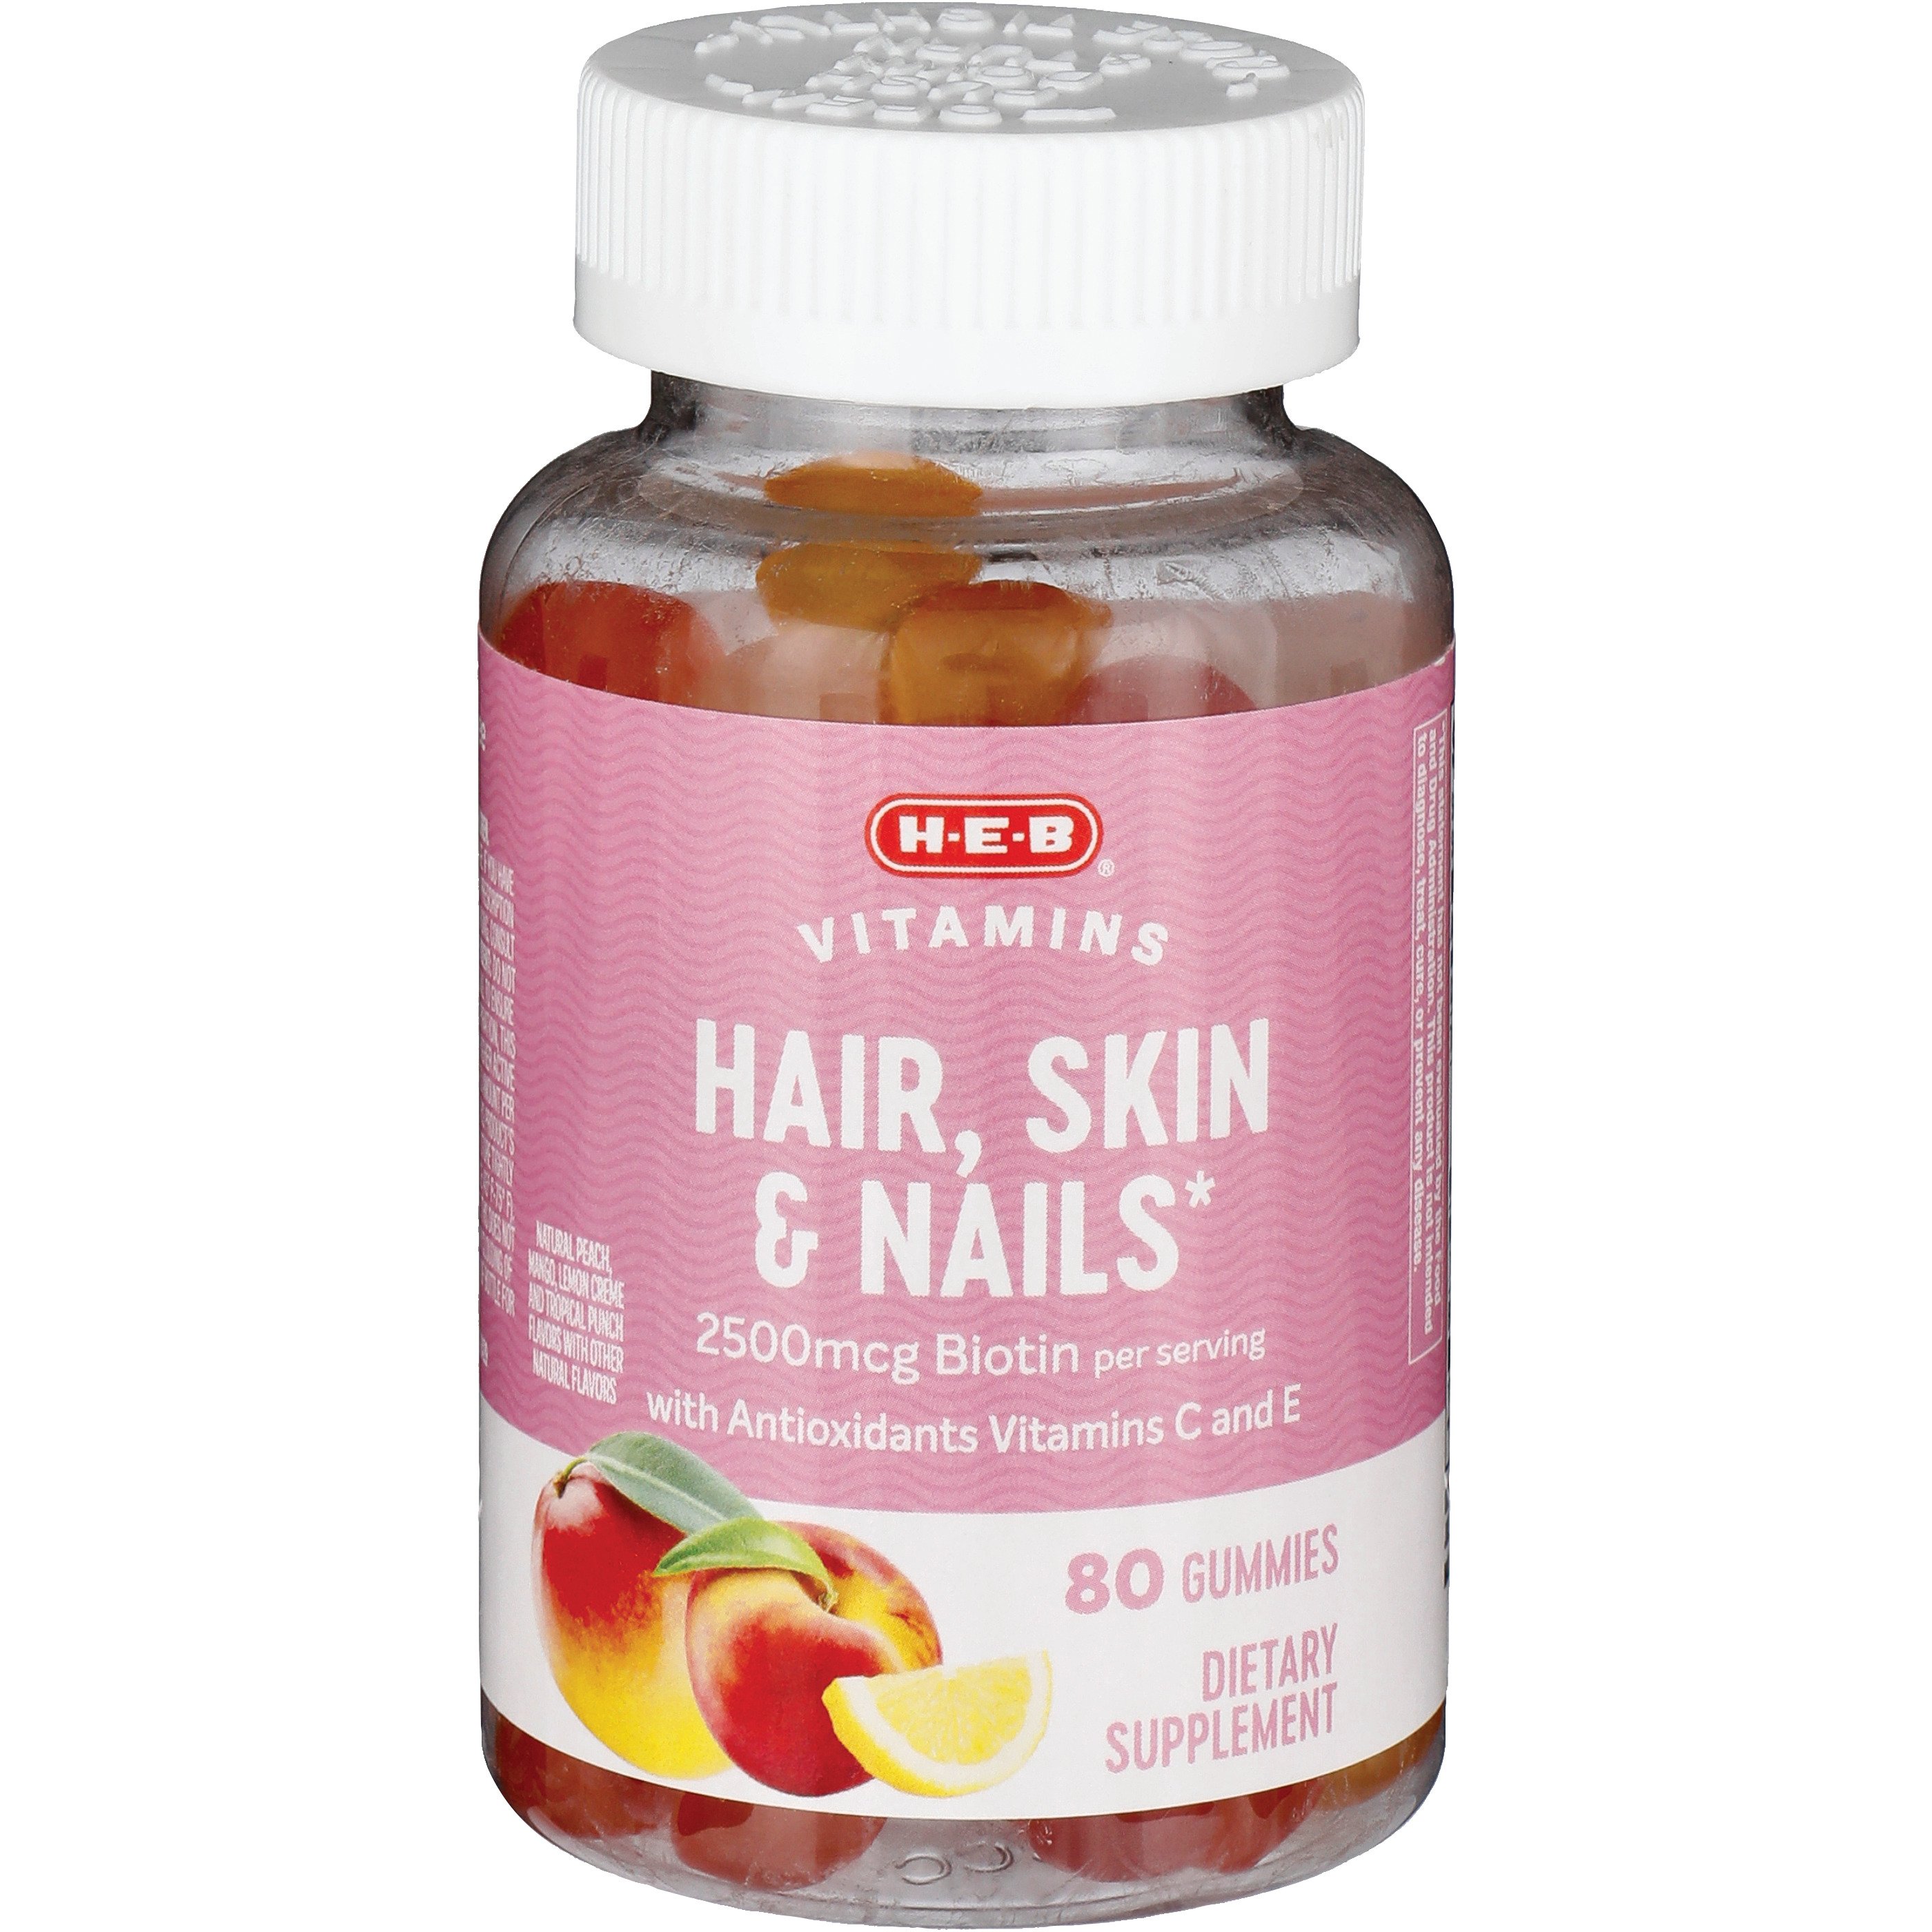 H-E-B Vitamins Hair Skin & Nails Gummies - Shop Multivitamins at H-E-B